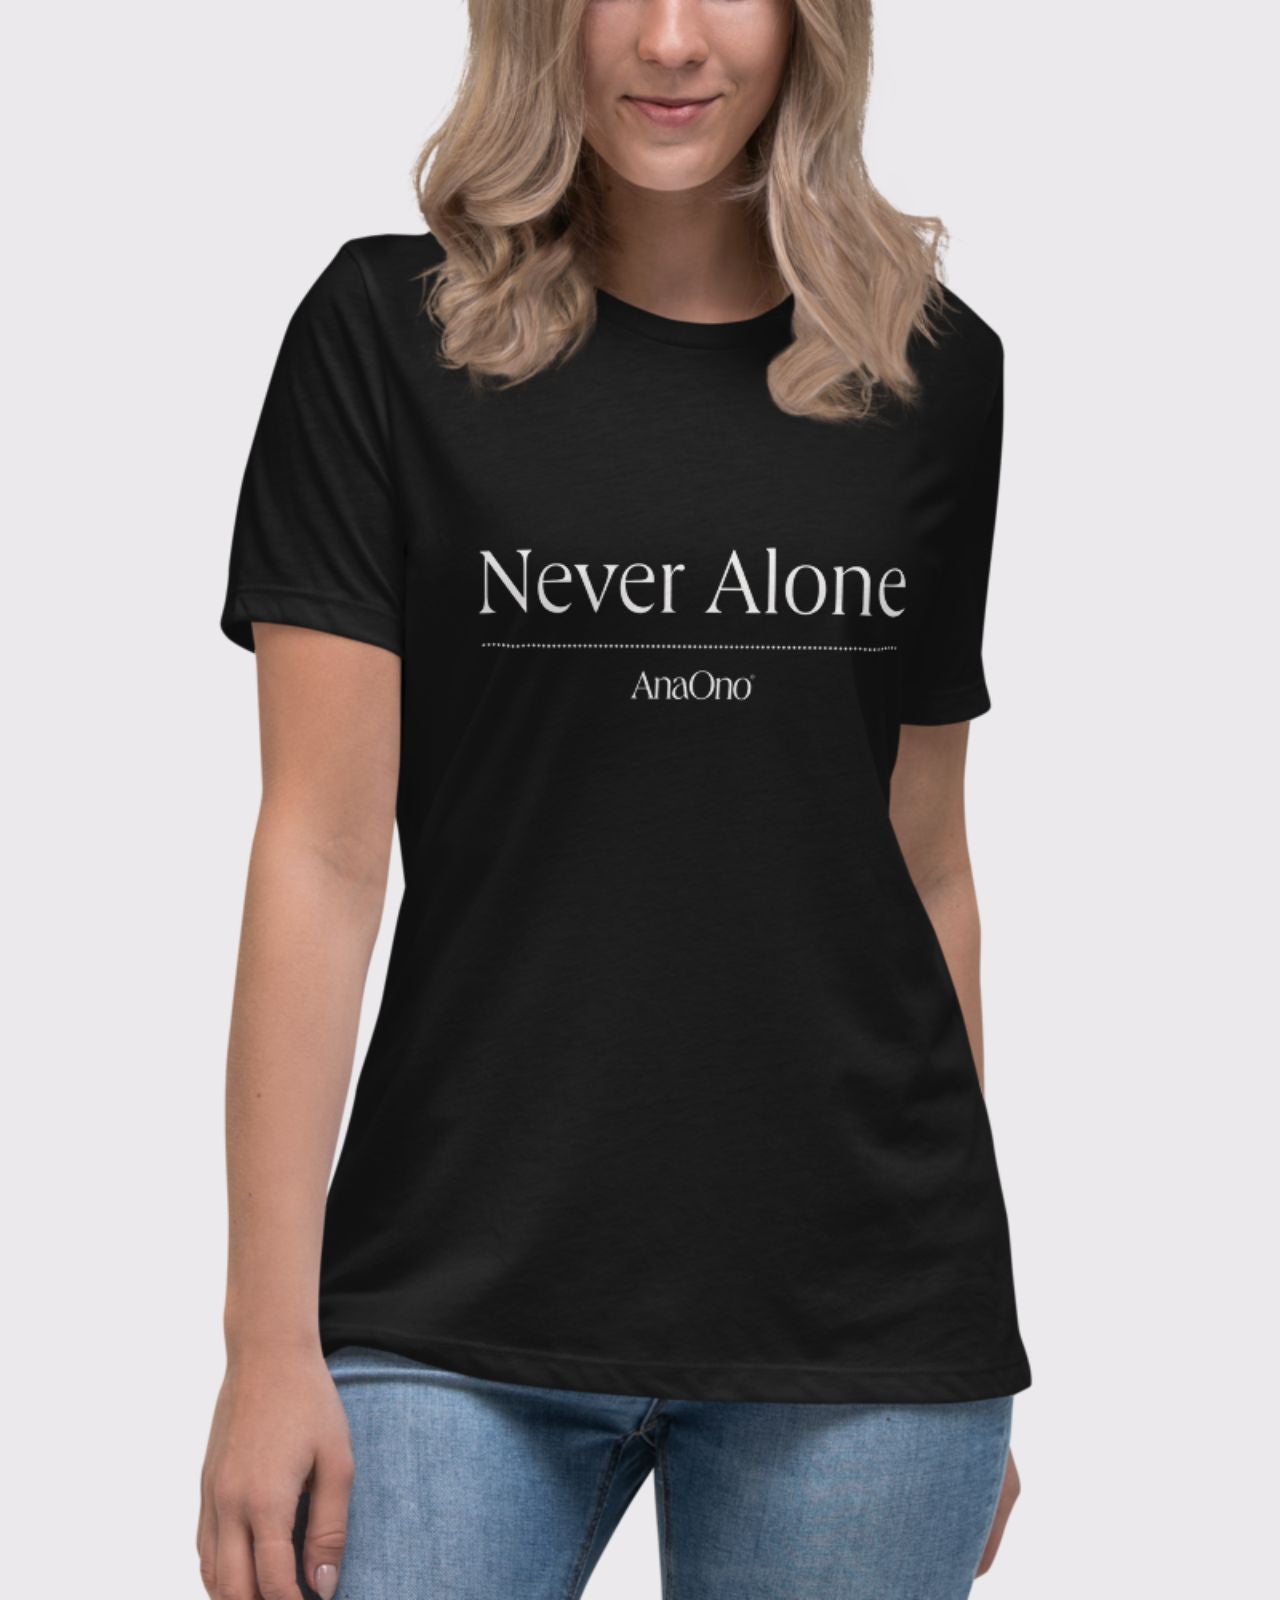 AnaOno Intimates: Never Alone Unisex T-Shirt